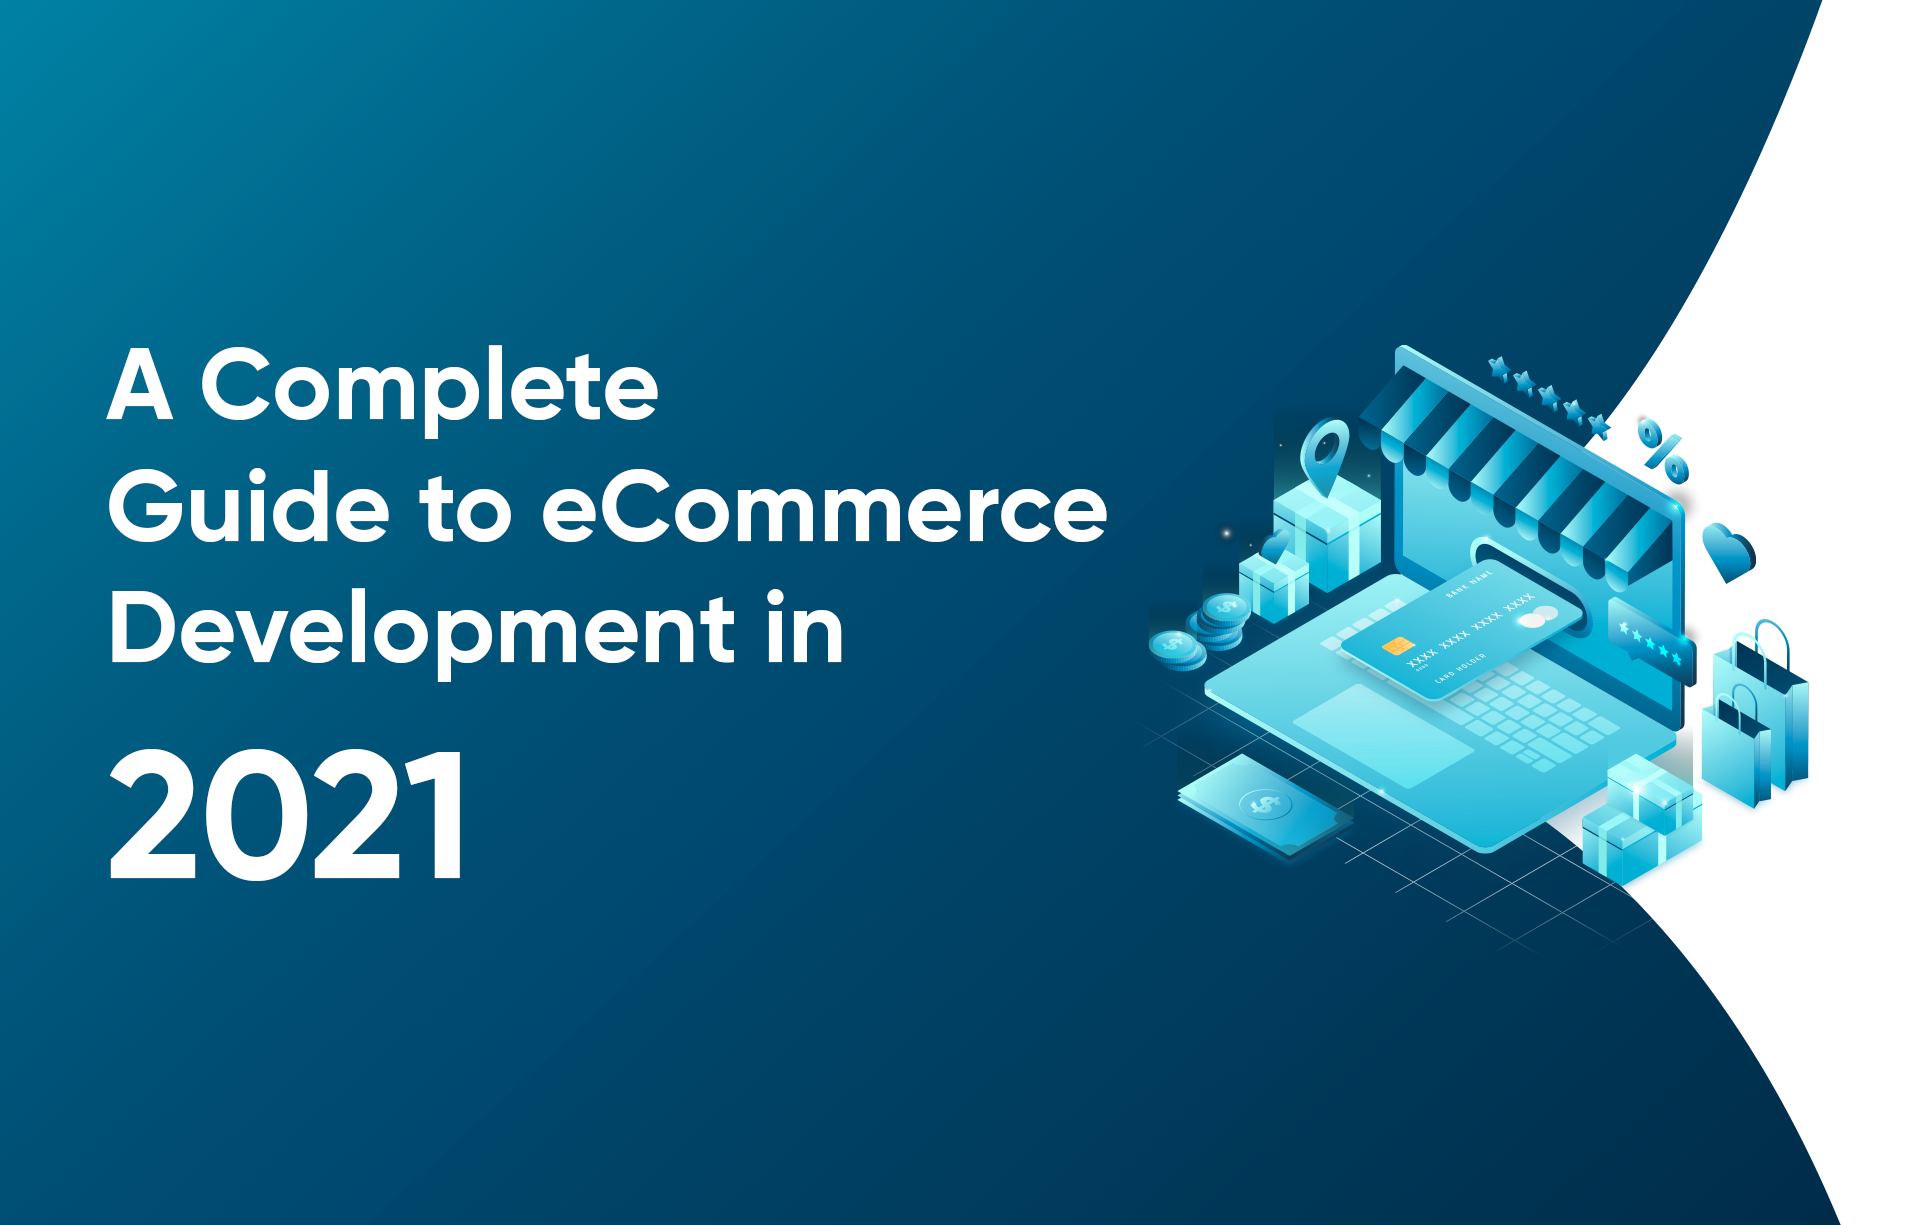 A Complete Guide to E-commerce Development